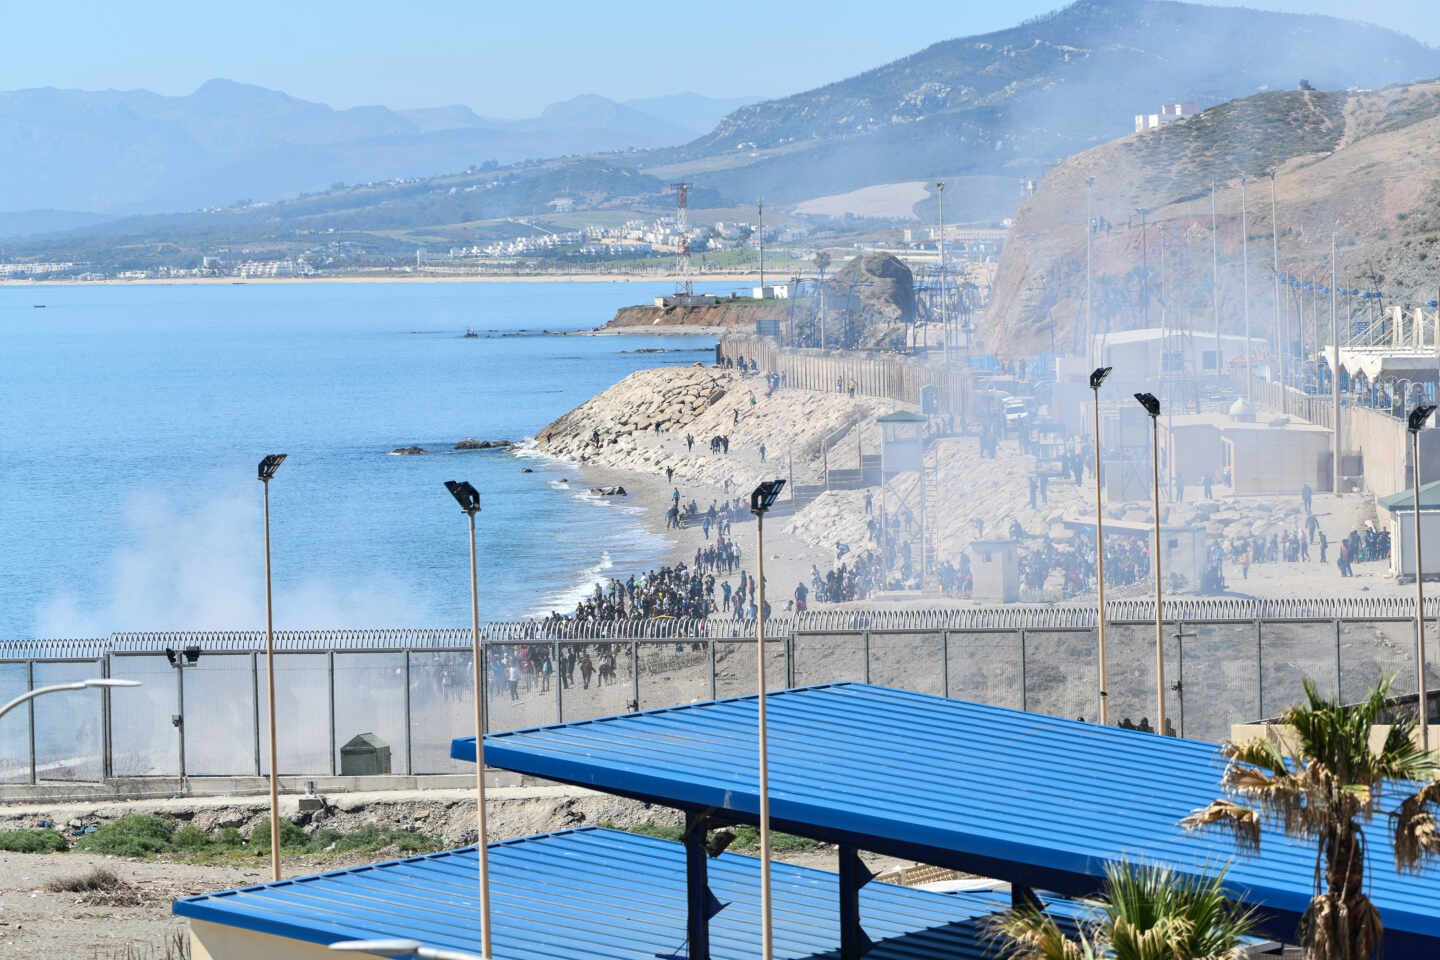 Agentes lanzan gas hacia los inmigrantes que tratan de cruzar la frontera hacia Ceuta desde Marruecos.